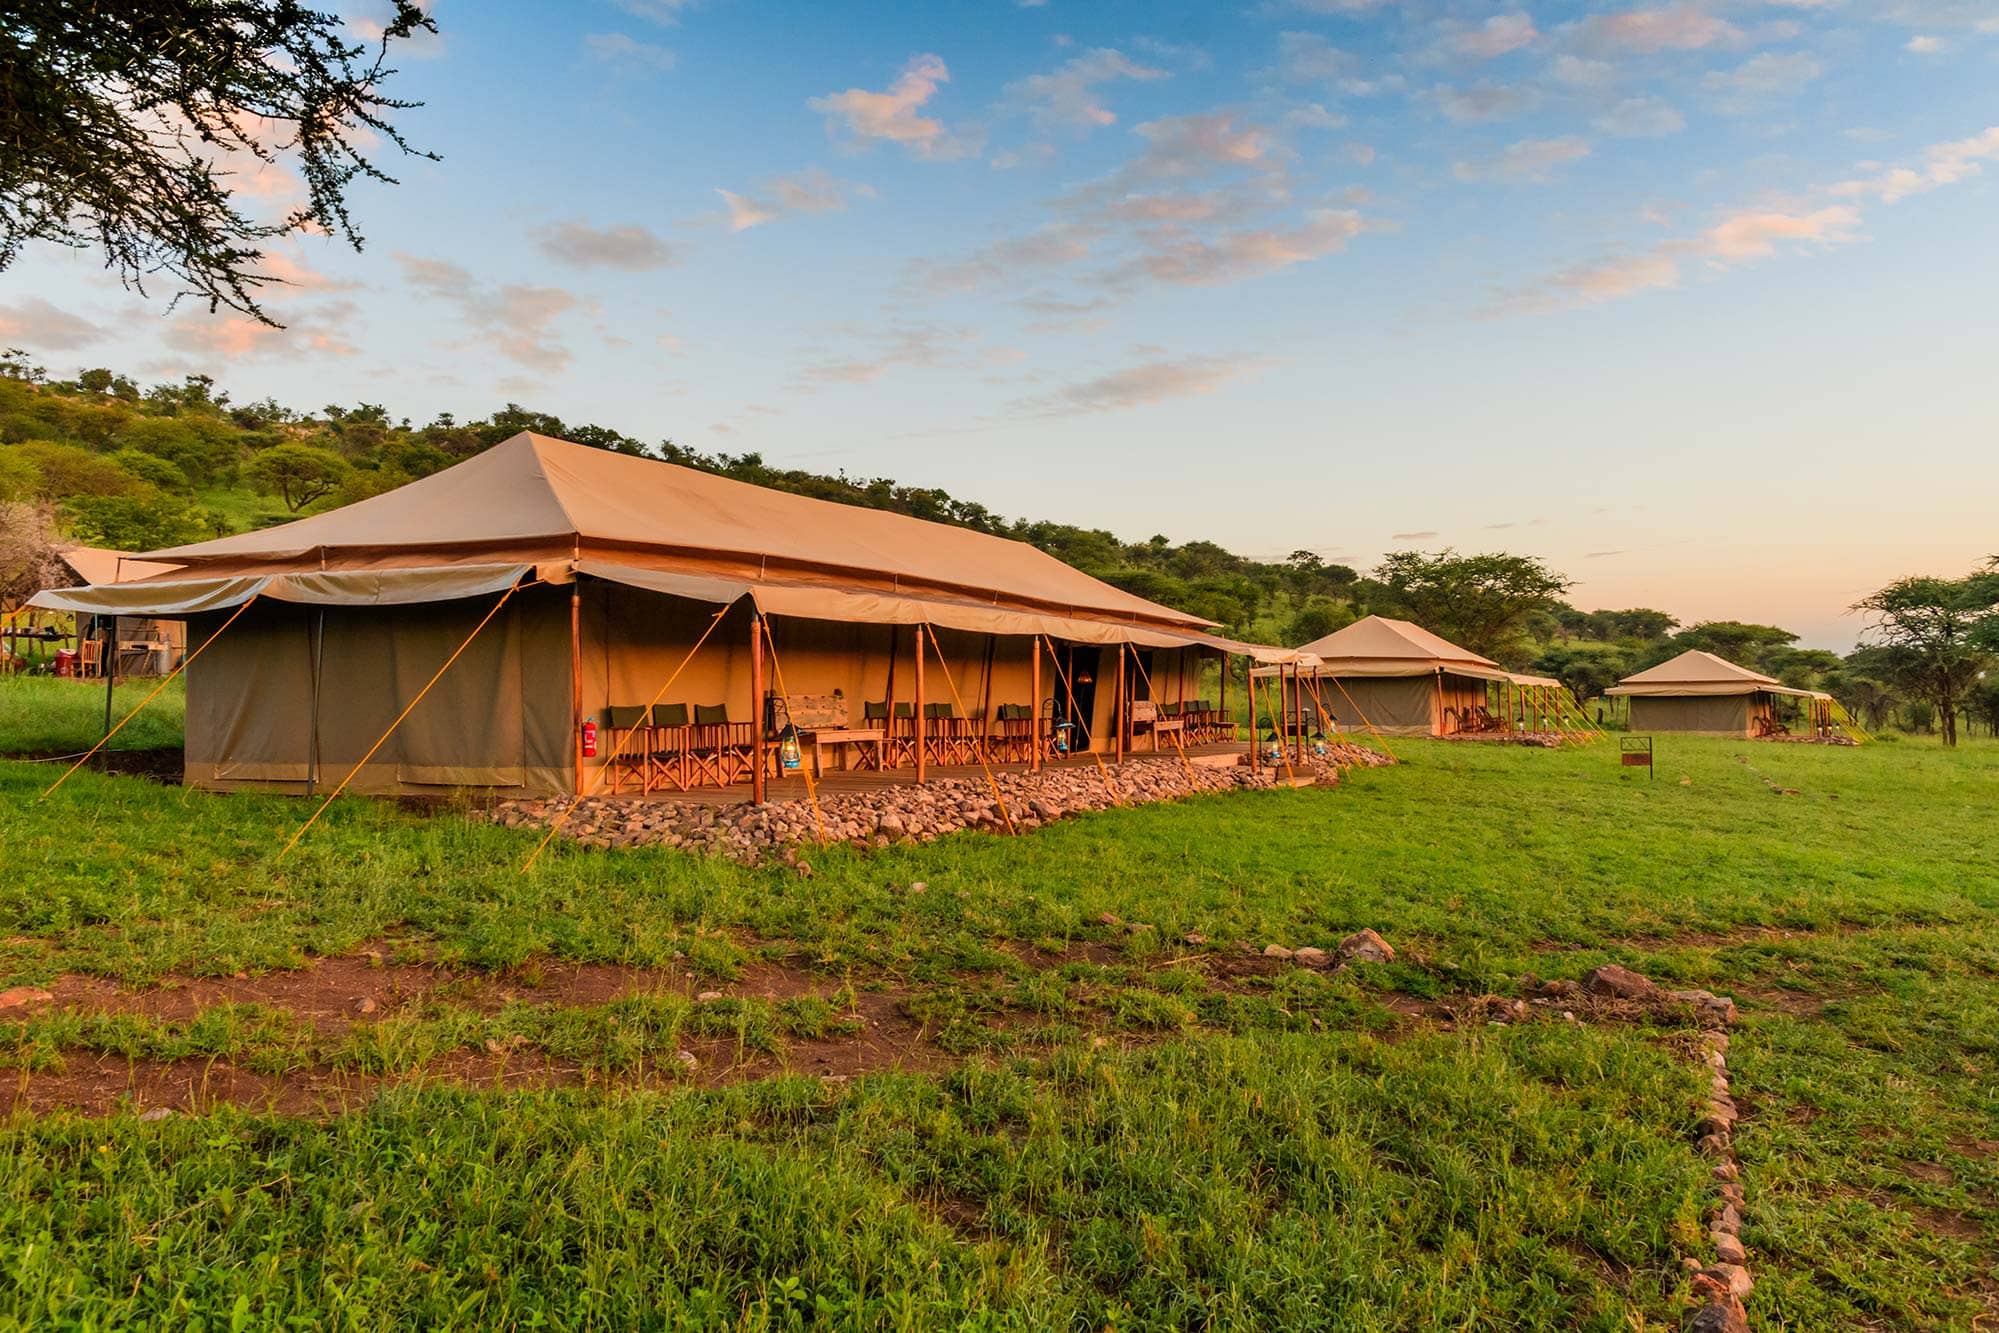 A tented camp in Tanzania